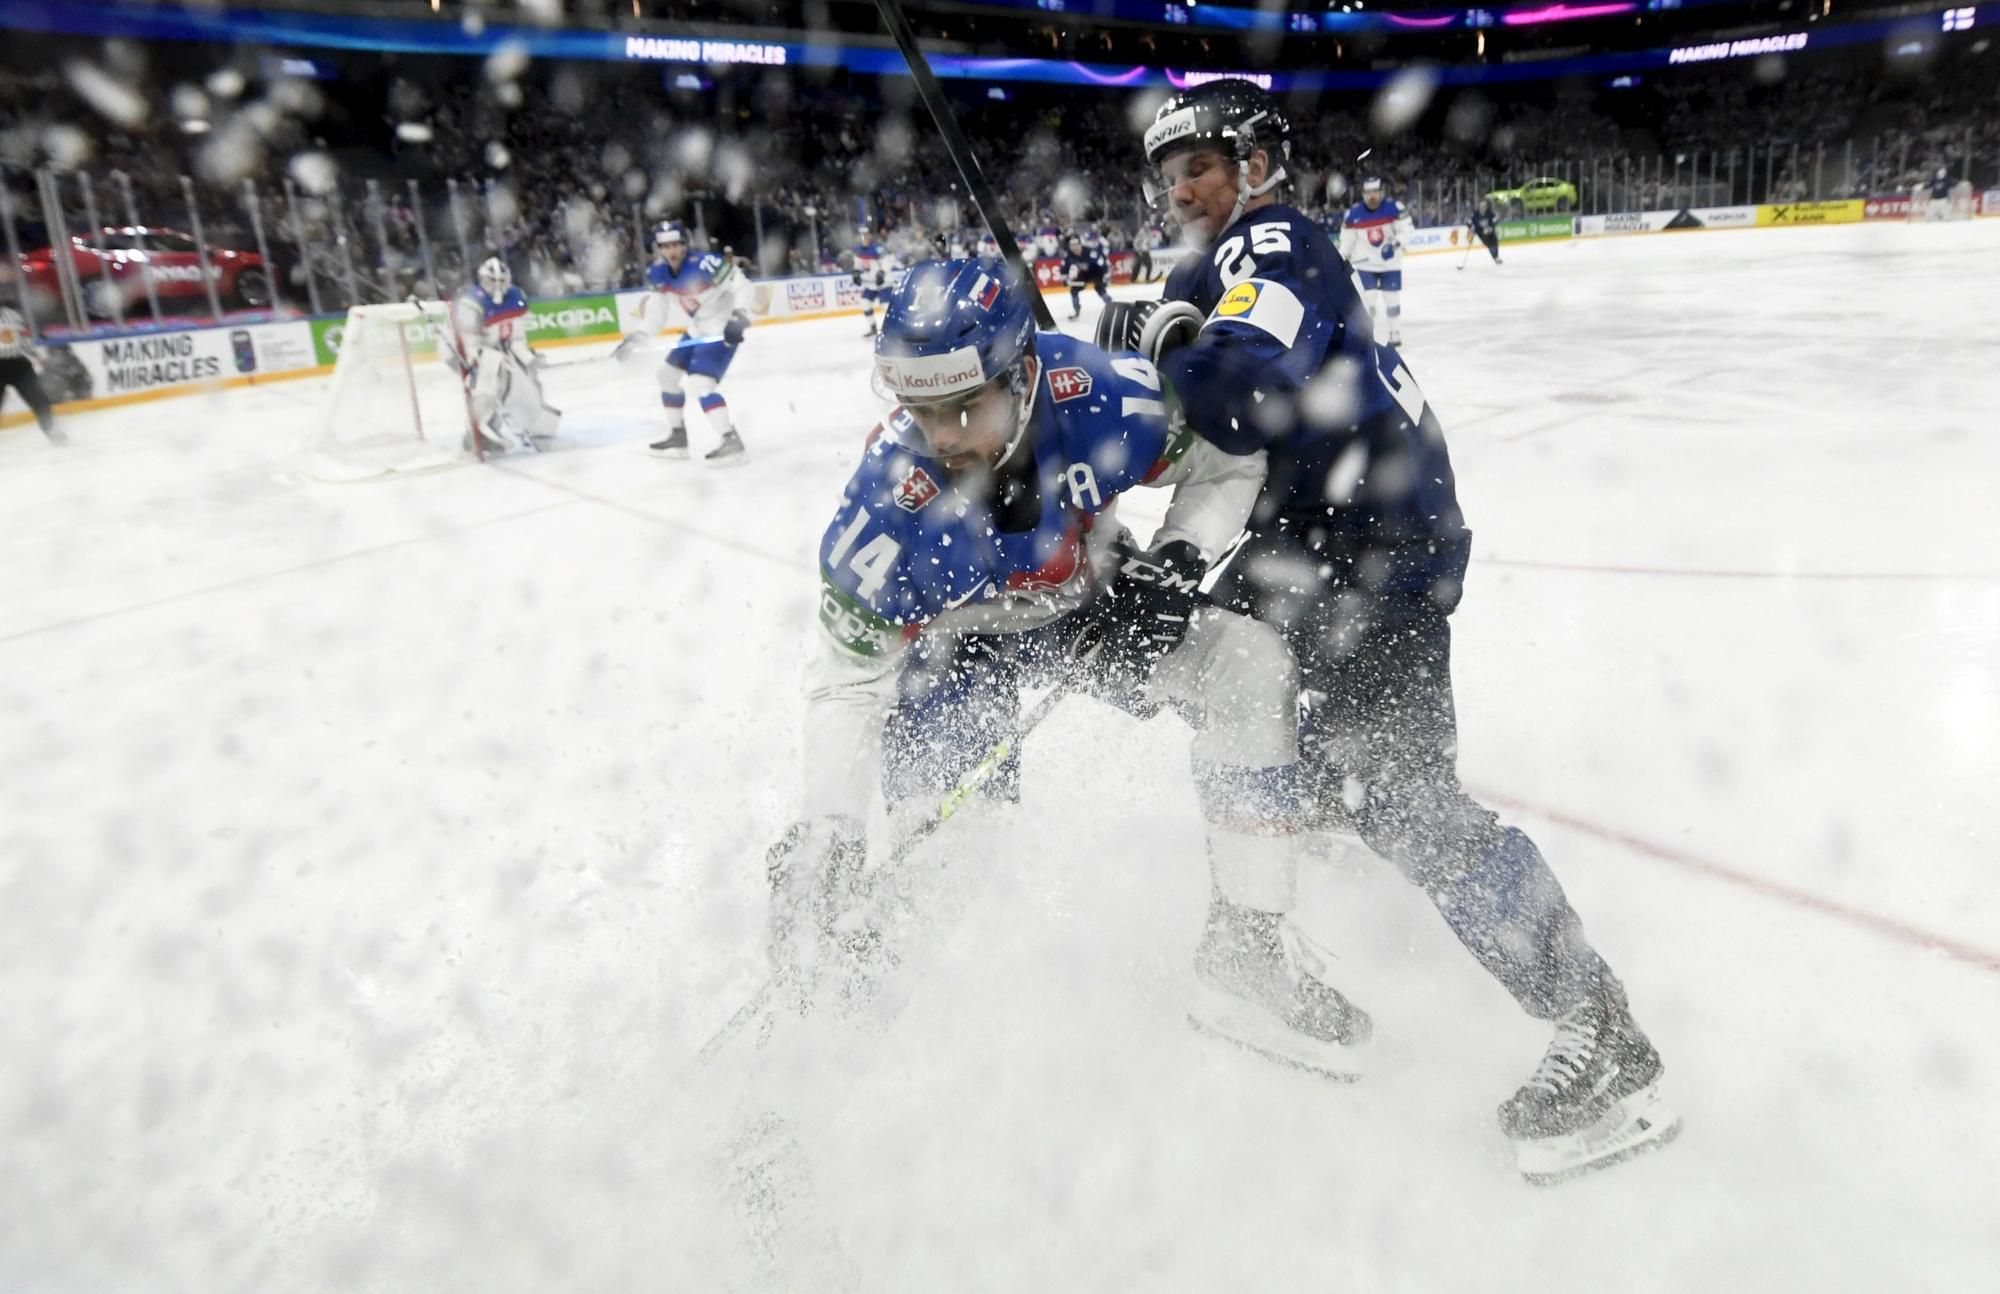 MS v hokeji 2022: Slovensko - Fínsko (Peter Čerešňák a Toni Rajala)